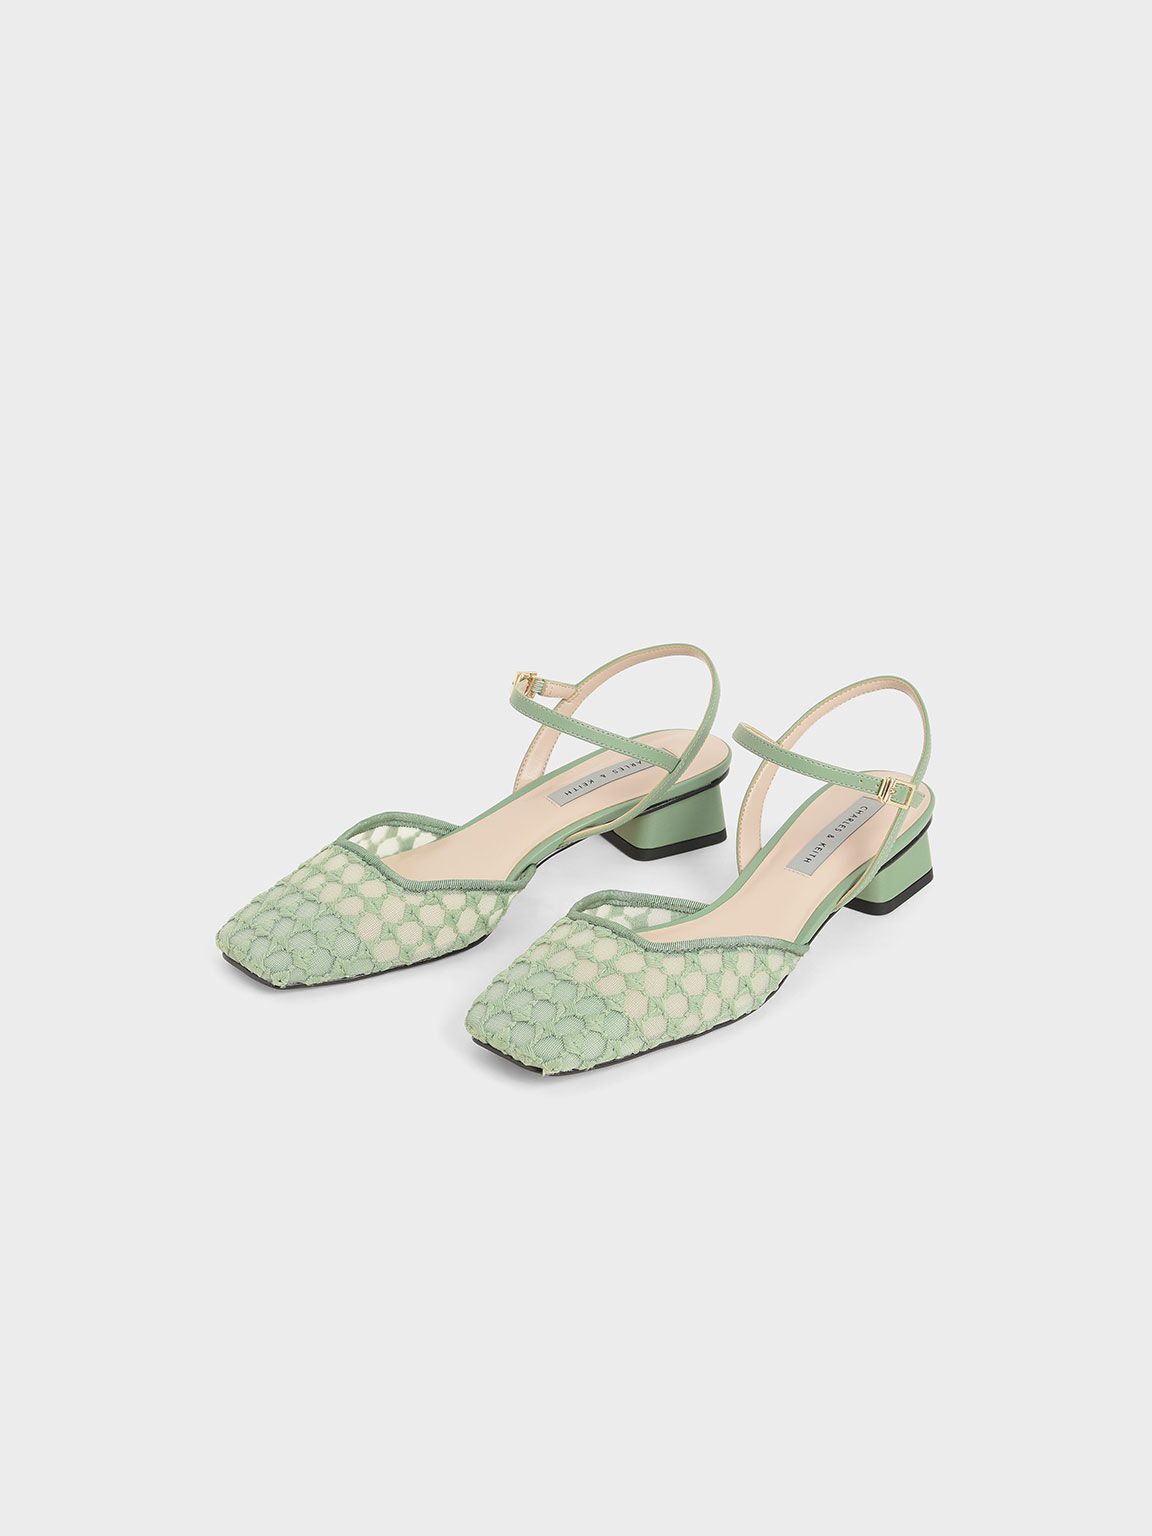 蕾絲編織低跟鞋, 綠色, hi-res